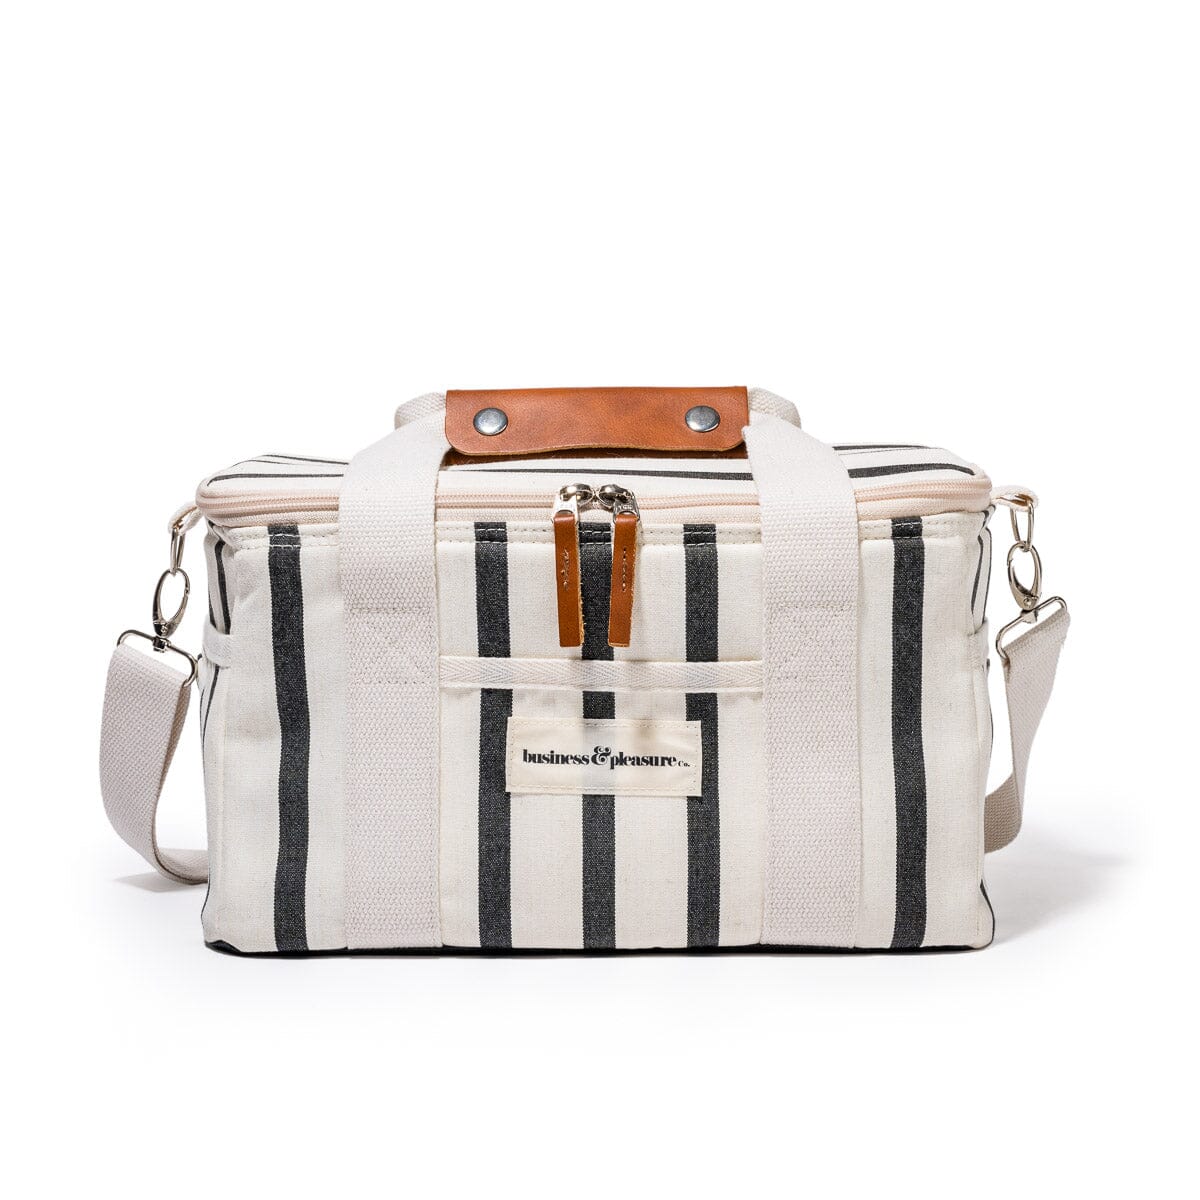 The Premium Cooler Bag - Monaco Black Stripe Premium Cooler Business & Pleasure Co 